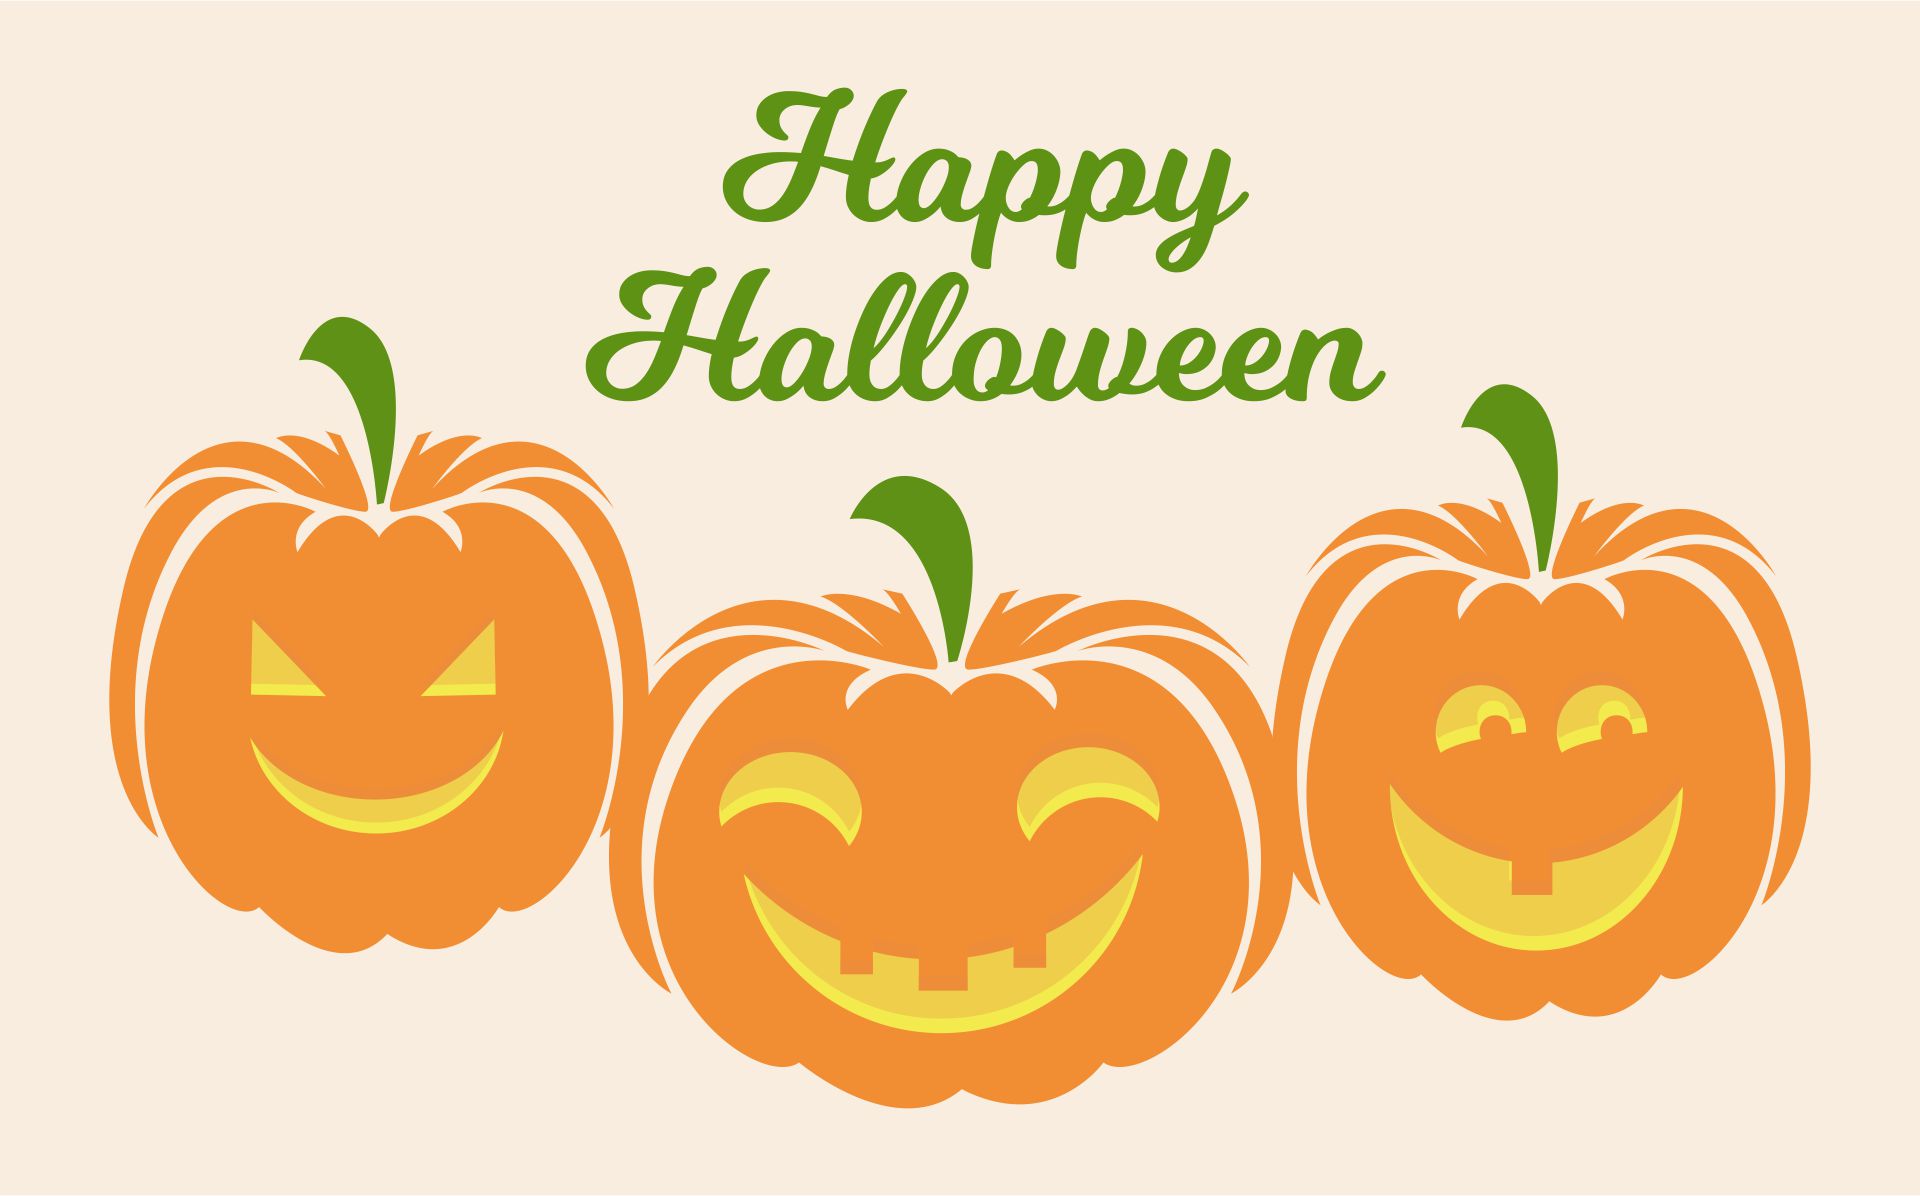 Happy Halloween Pumpkin Clip Art Transparent PNG - 520x240 - Free ...